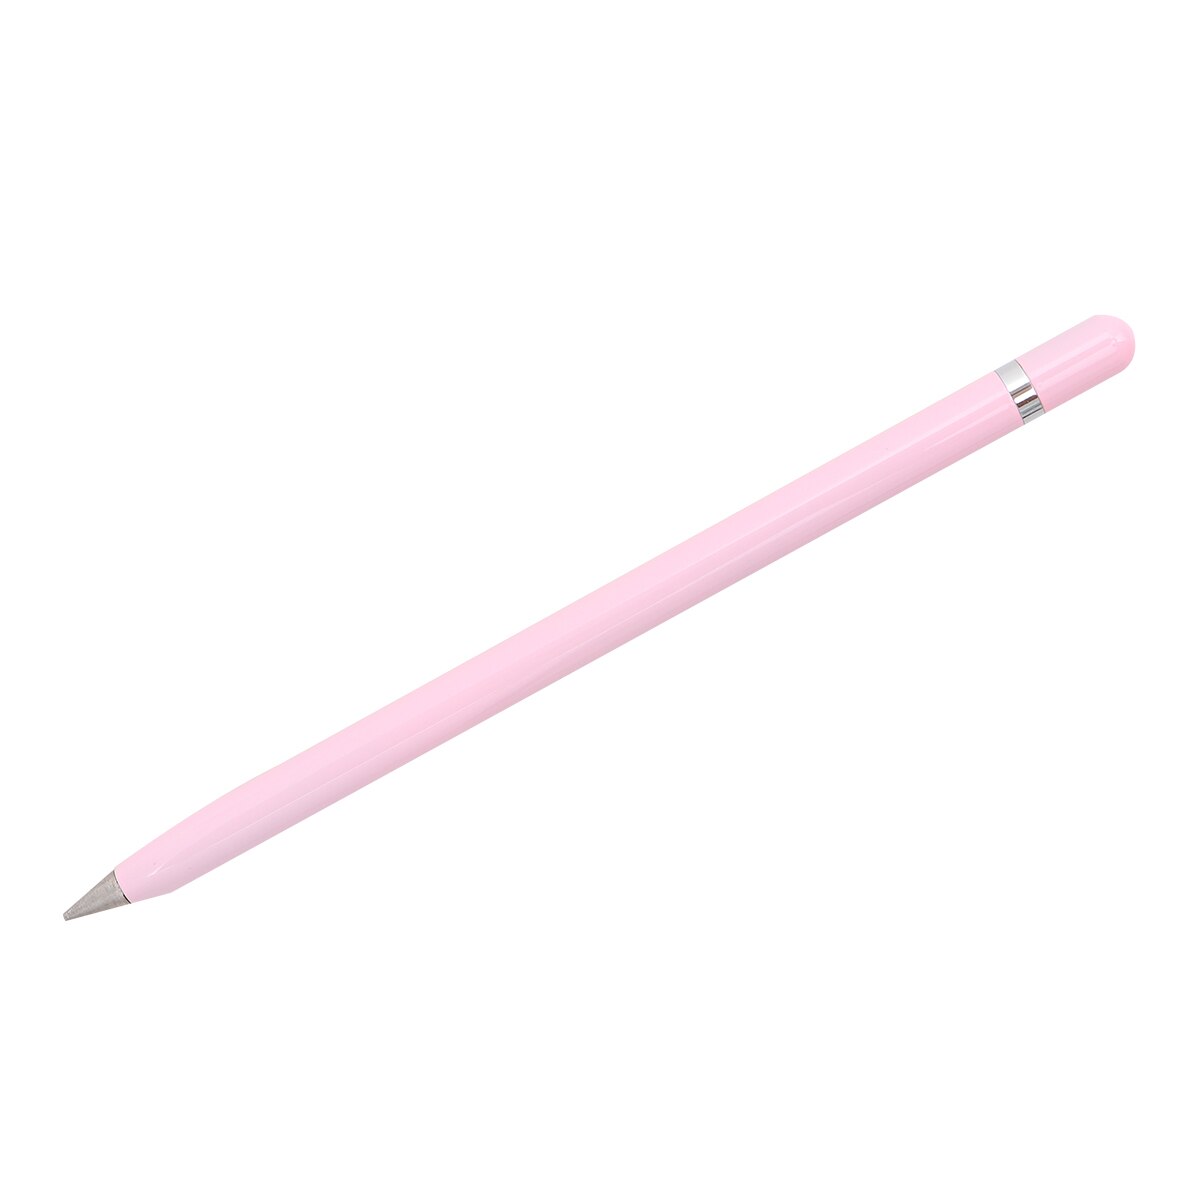 Retro messing blækfri pen ren messing metal ingen blæk pen kobber pen stylus evigvarende blyant udendørs rejse: Lyserød